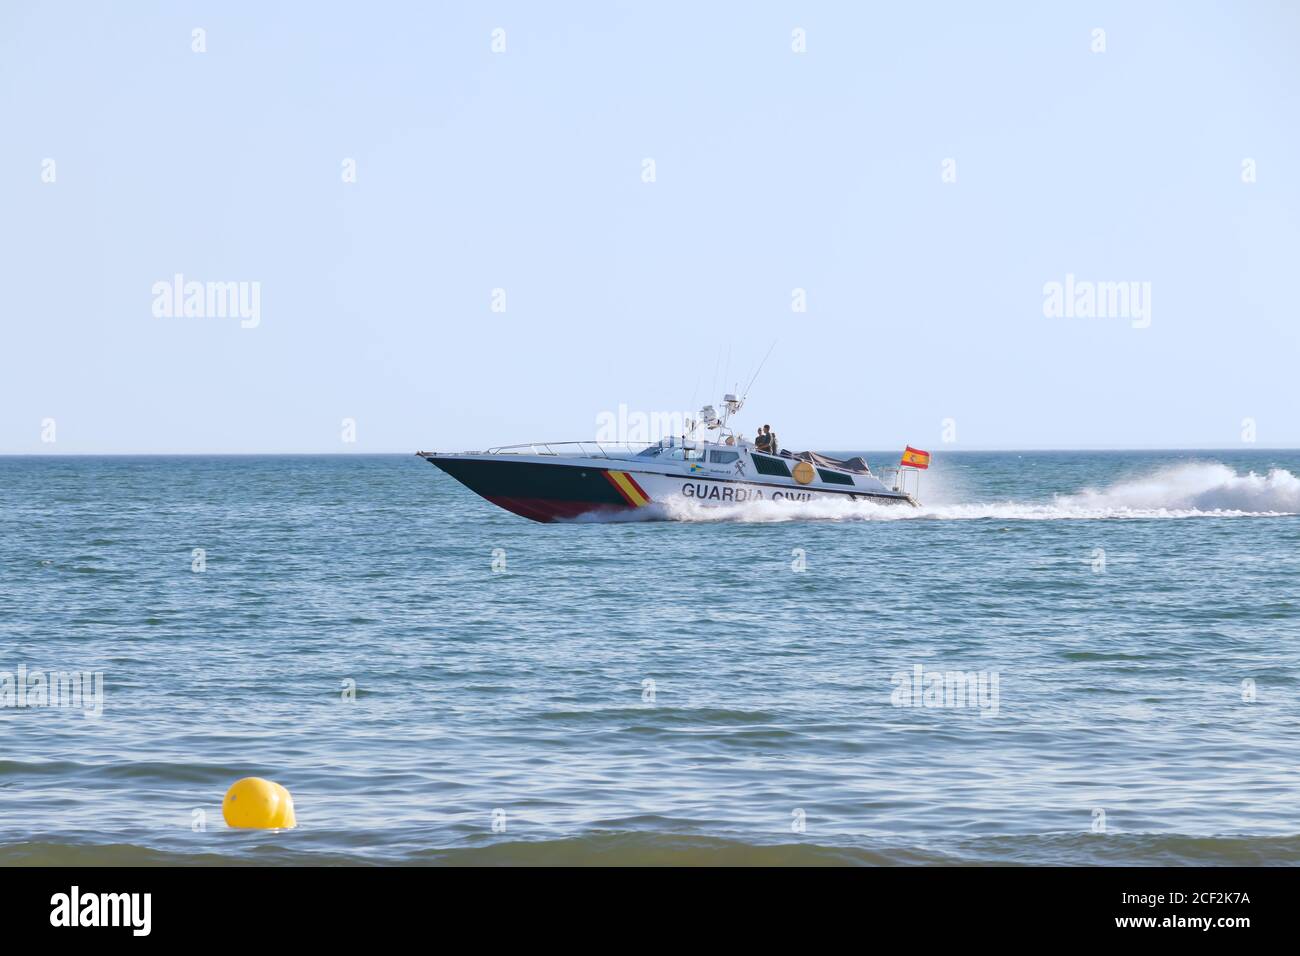 Punta Umbria, Huelva, Espagne - 31 août 2020: Guardia patrouille de garde côtière civile naviguant près de la rive de la plage pour contrôler la capacité du bea Banque D'Images